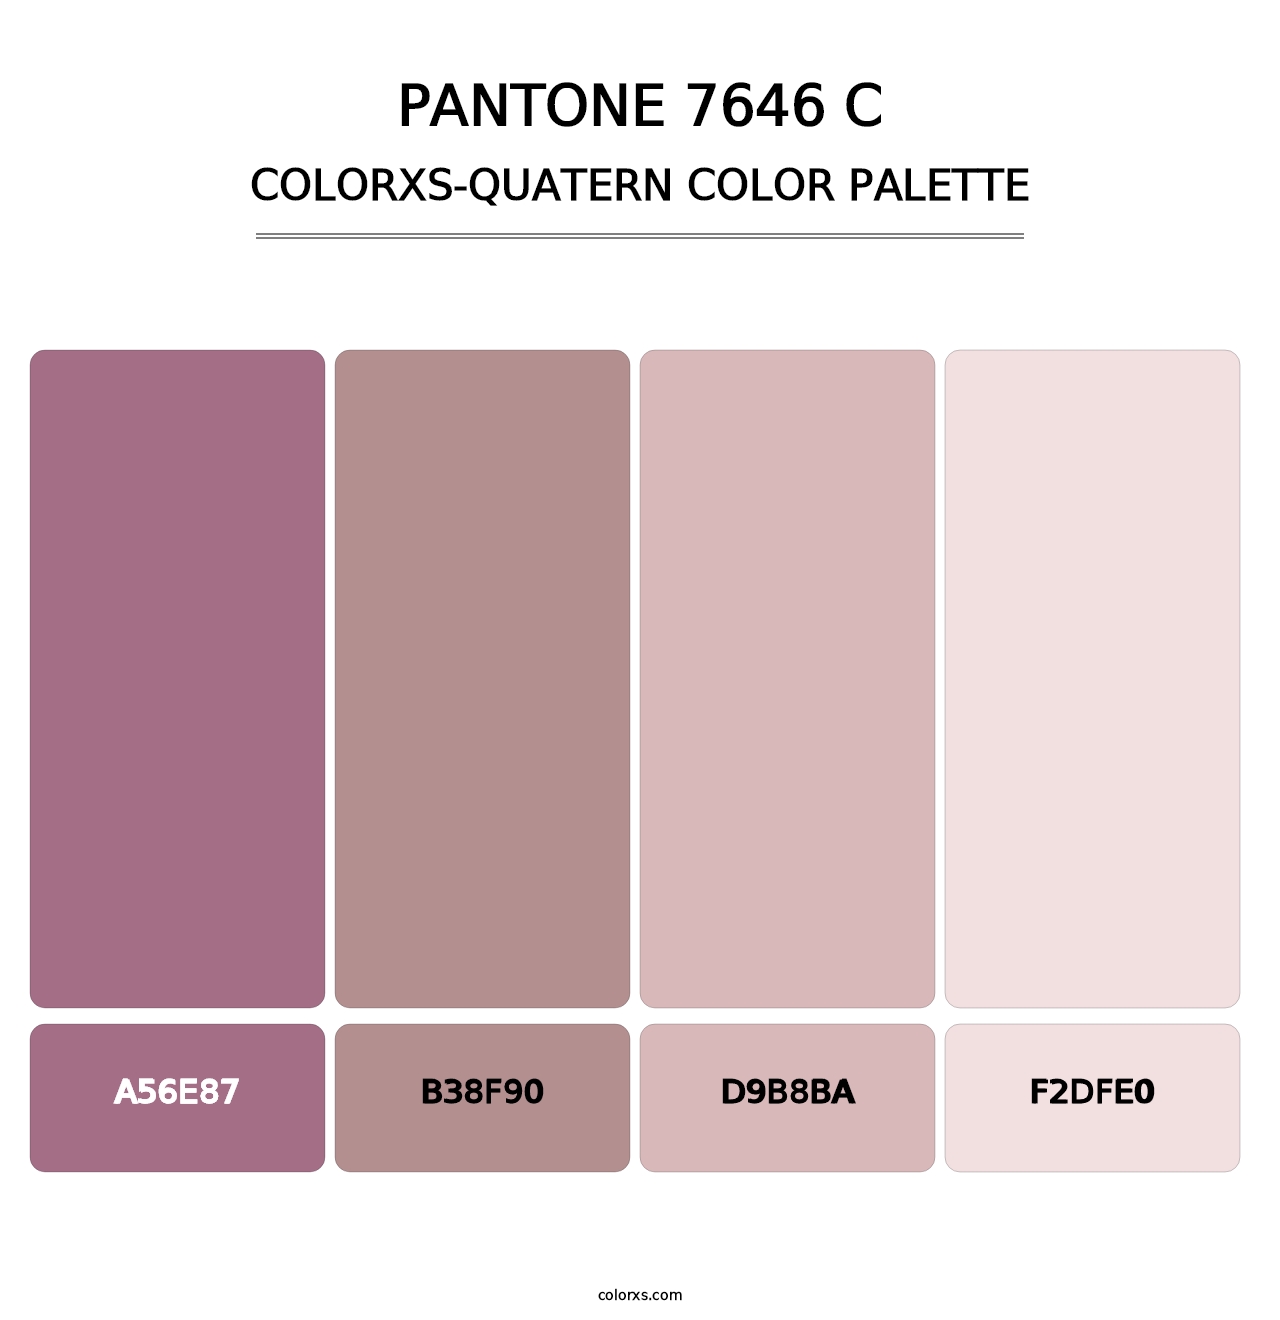 PANTONE 7646 C - Colorxs Quatern Palette